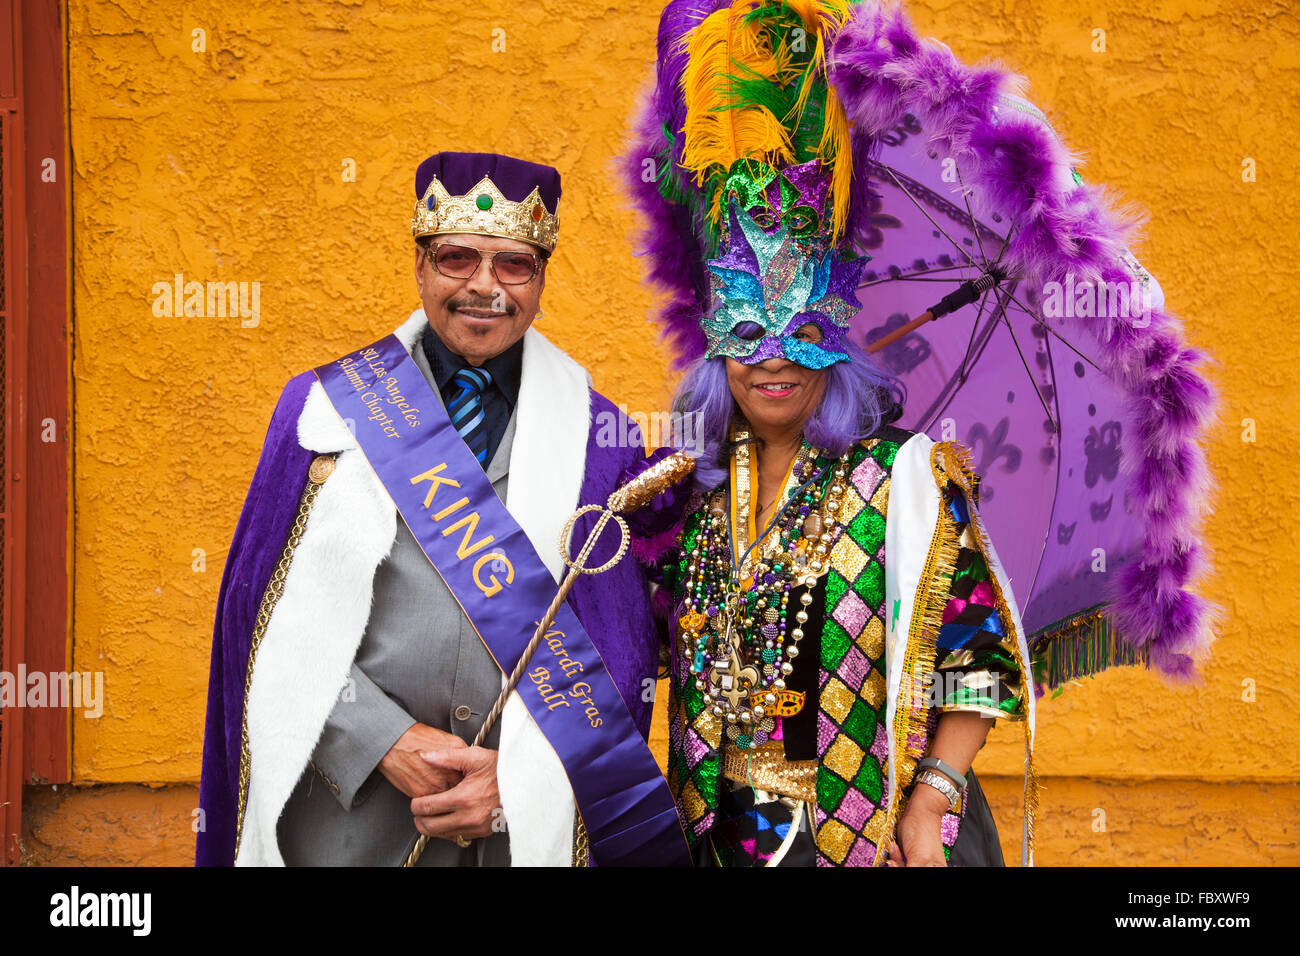 31. jährliche Kingdom Day Parade-Louisiana an Los Angeles Organizing Committee, Inc. (LALA) Mitglieder, die Arbeiten zur Verbesserung der mone Stockfoto